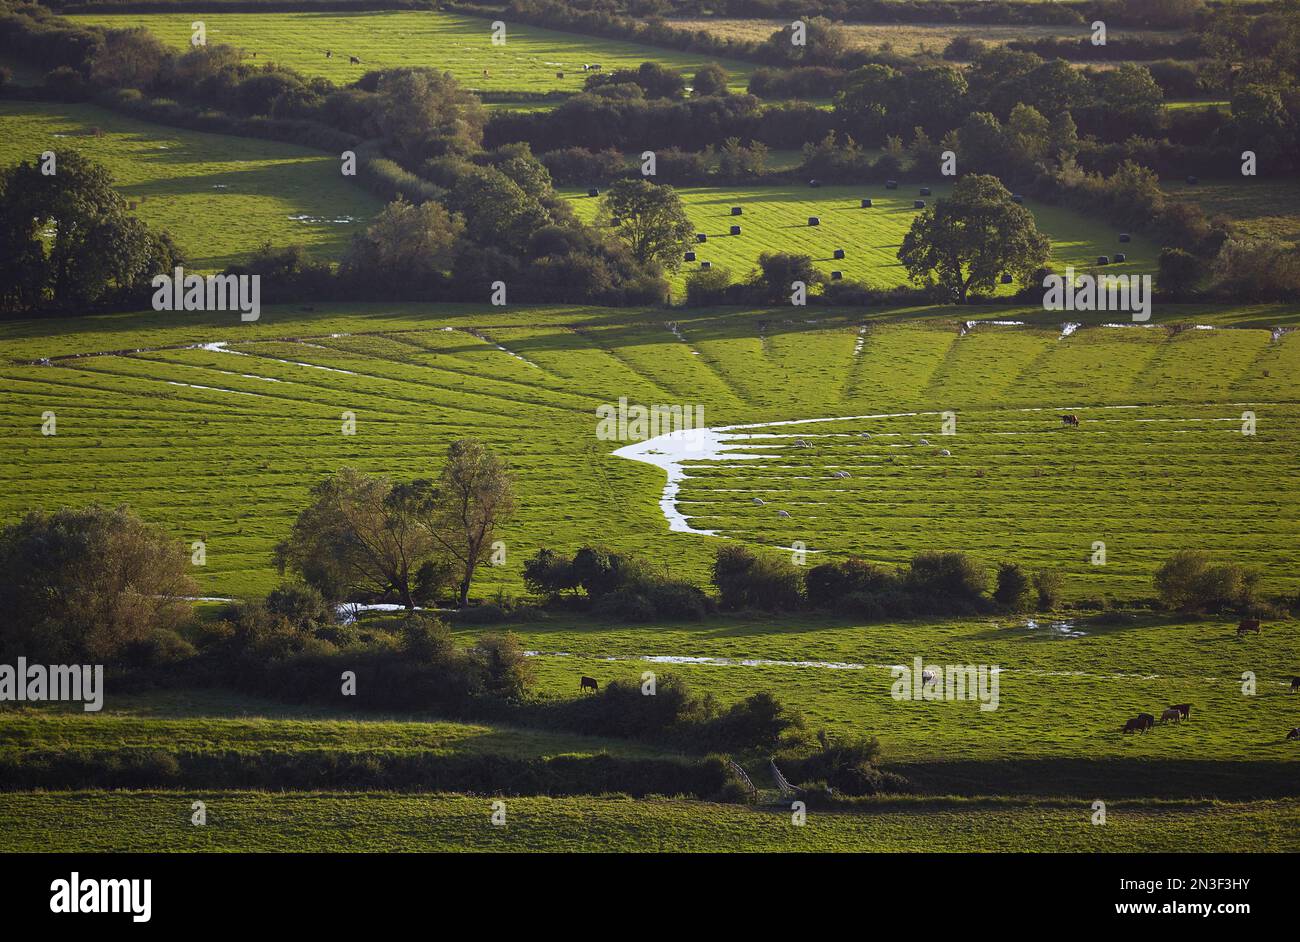 Une vue sur la campagne de terres agricoles luxuriantes depuis les pentes de Crook Peak ; Somerset, Angleterre, Grande-Bretagne Banque D'Images